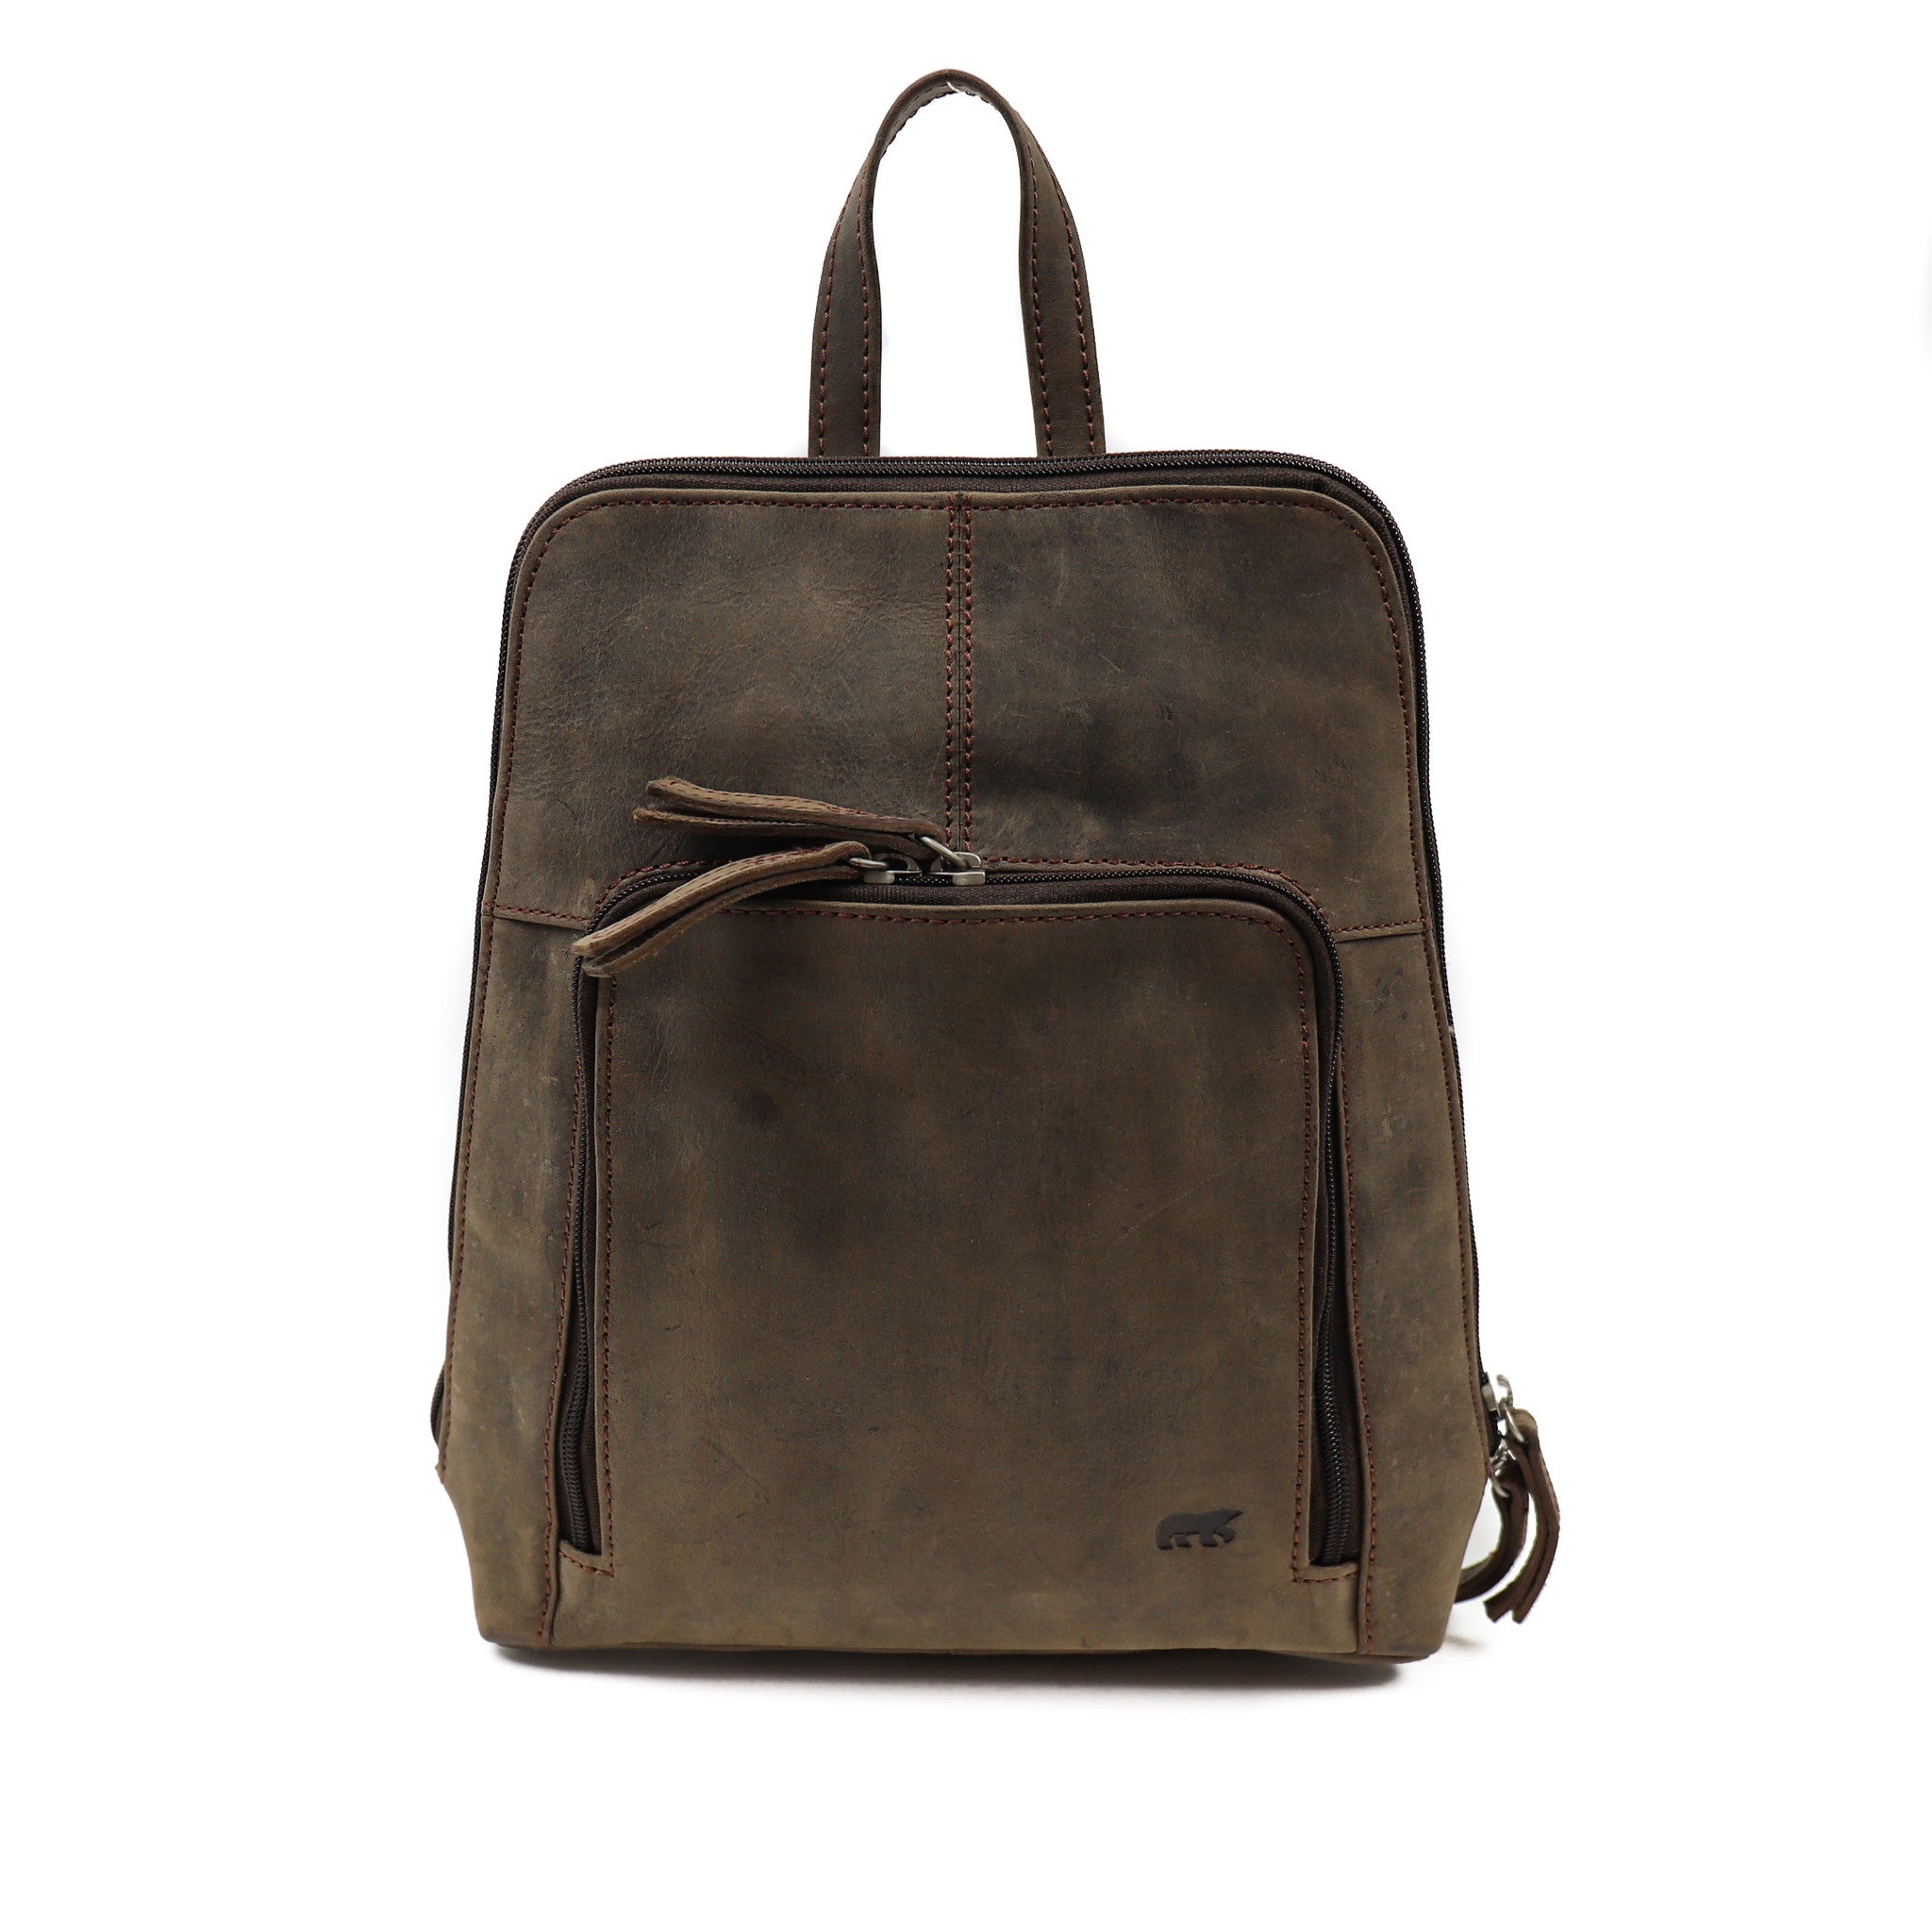 Backpack 'Barbel' brown - HD 6282